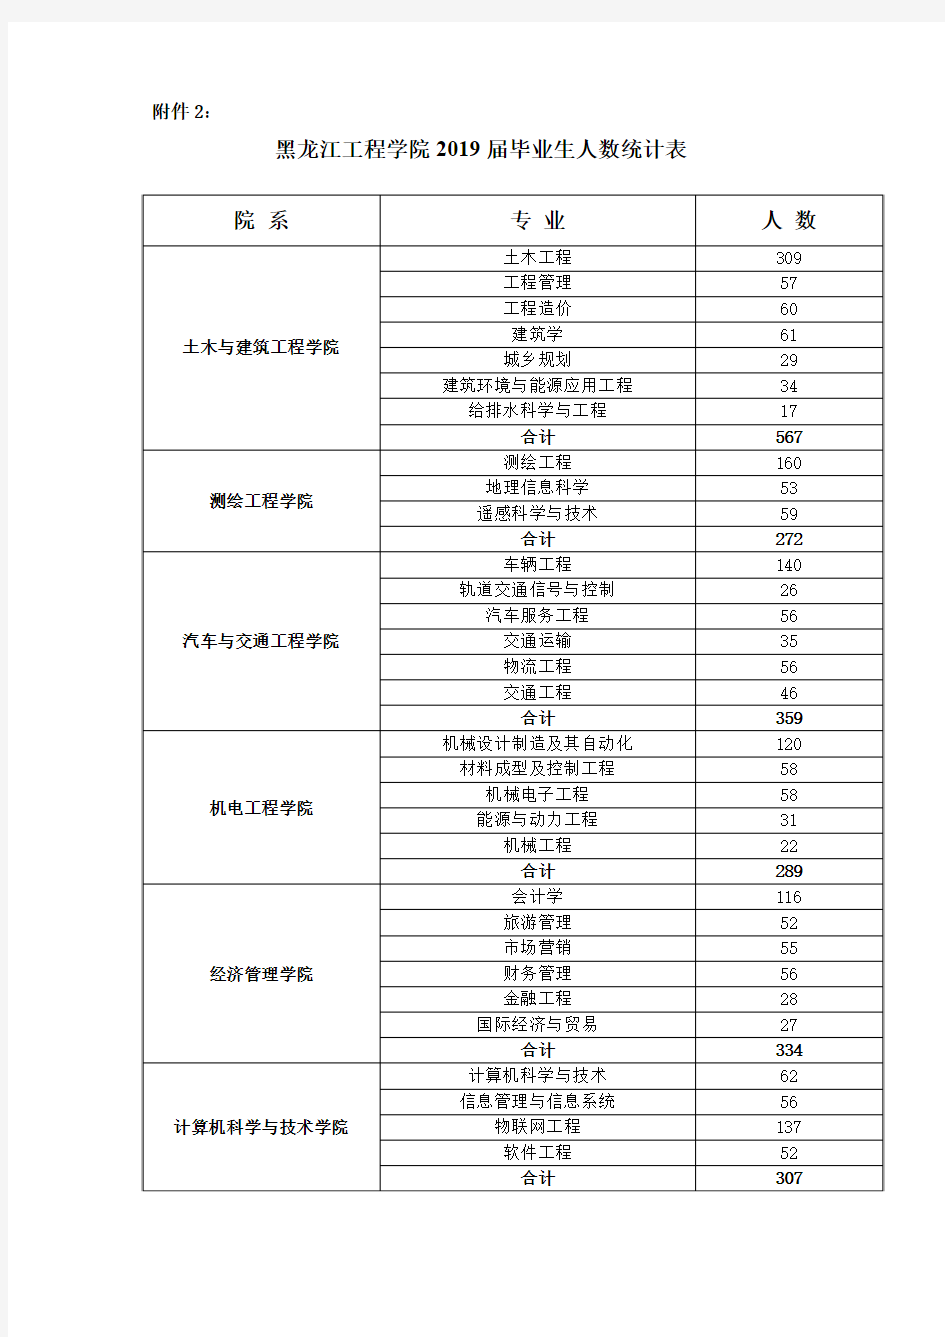 黑龙江工程学院2019届毕业生人数统计表院系专业人数土木